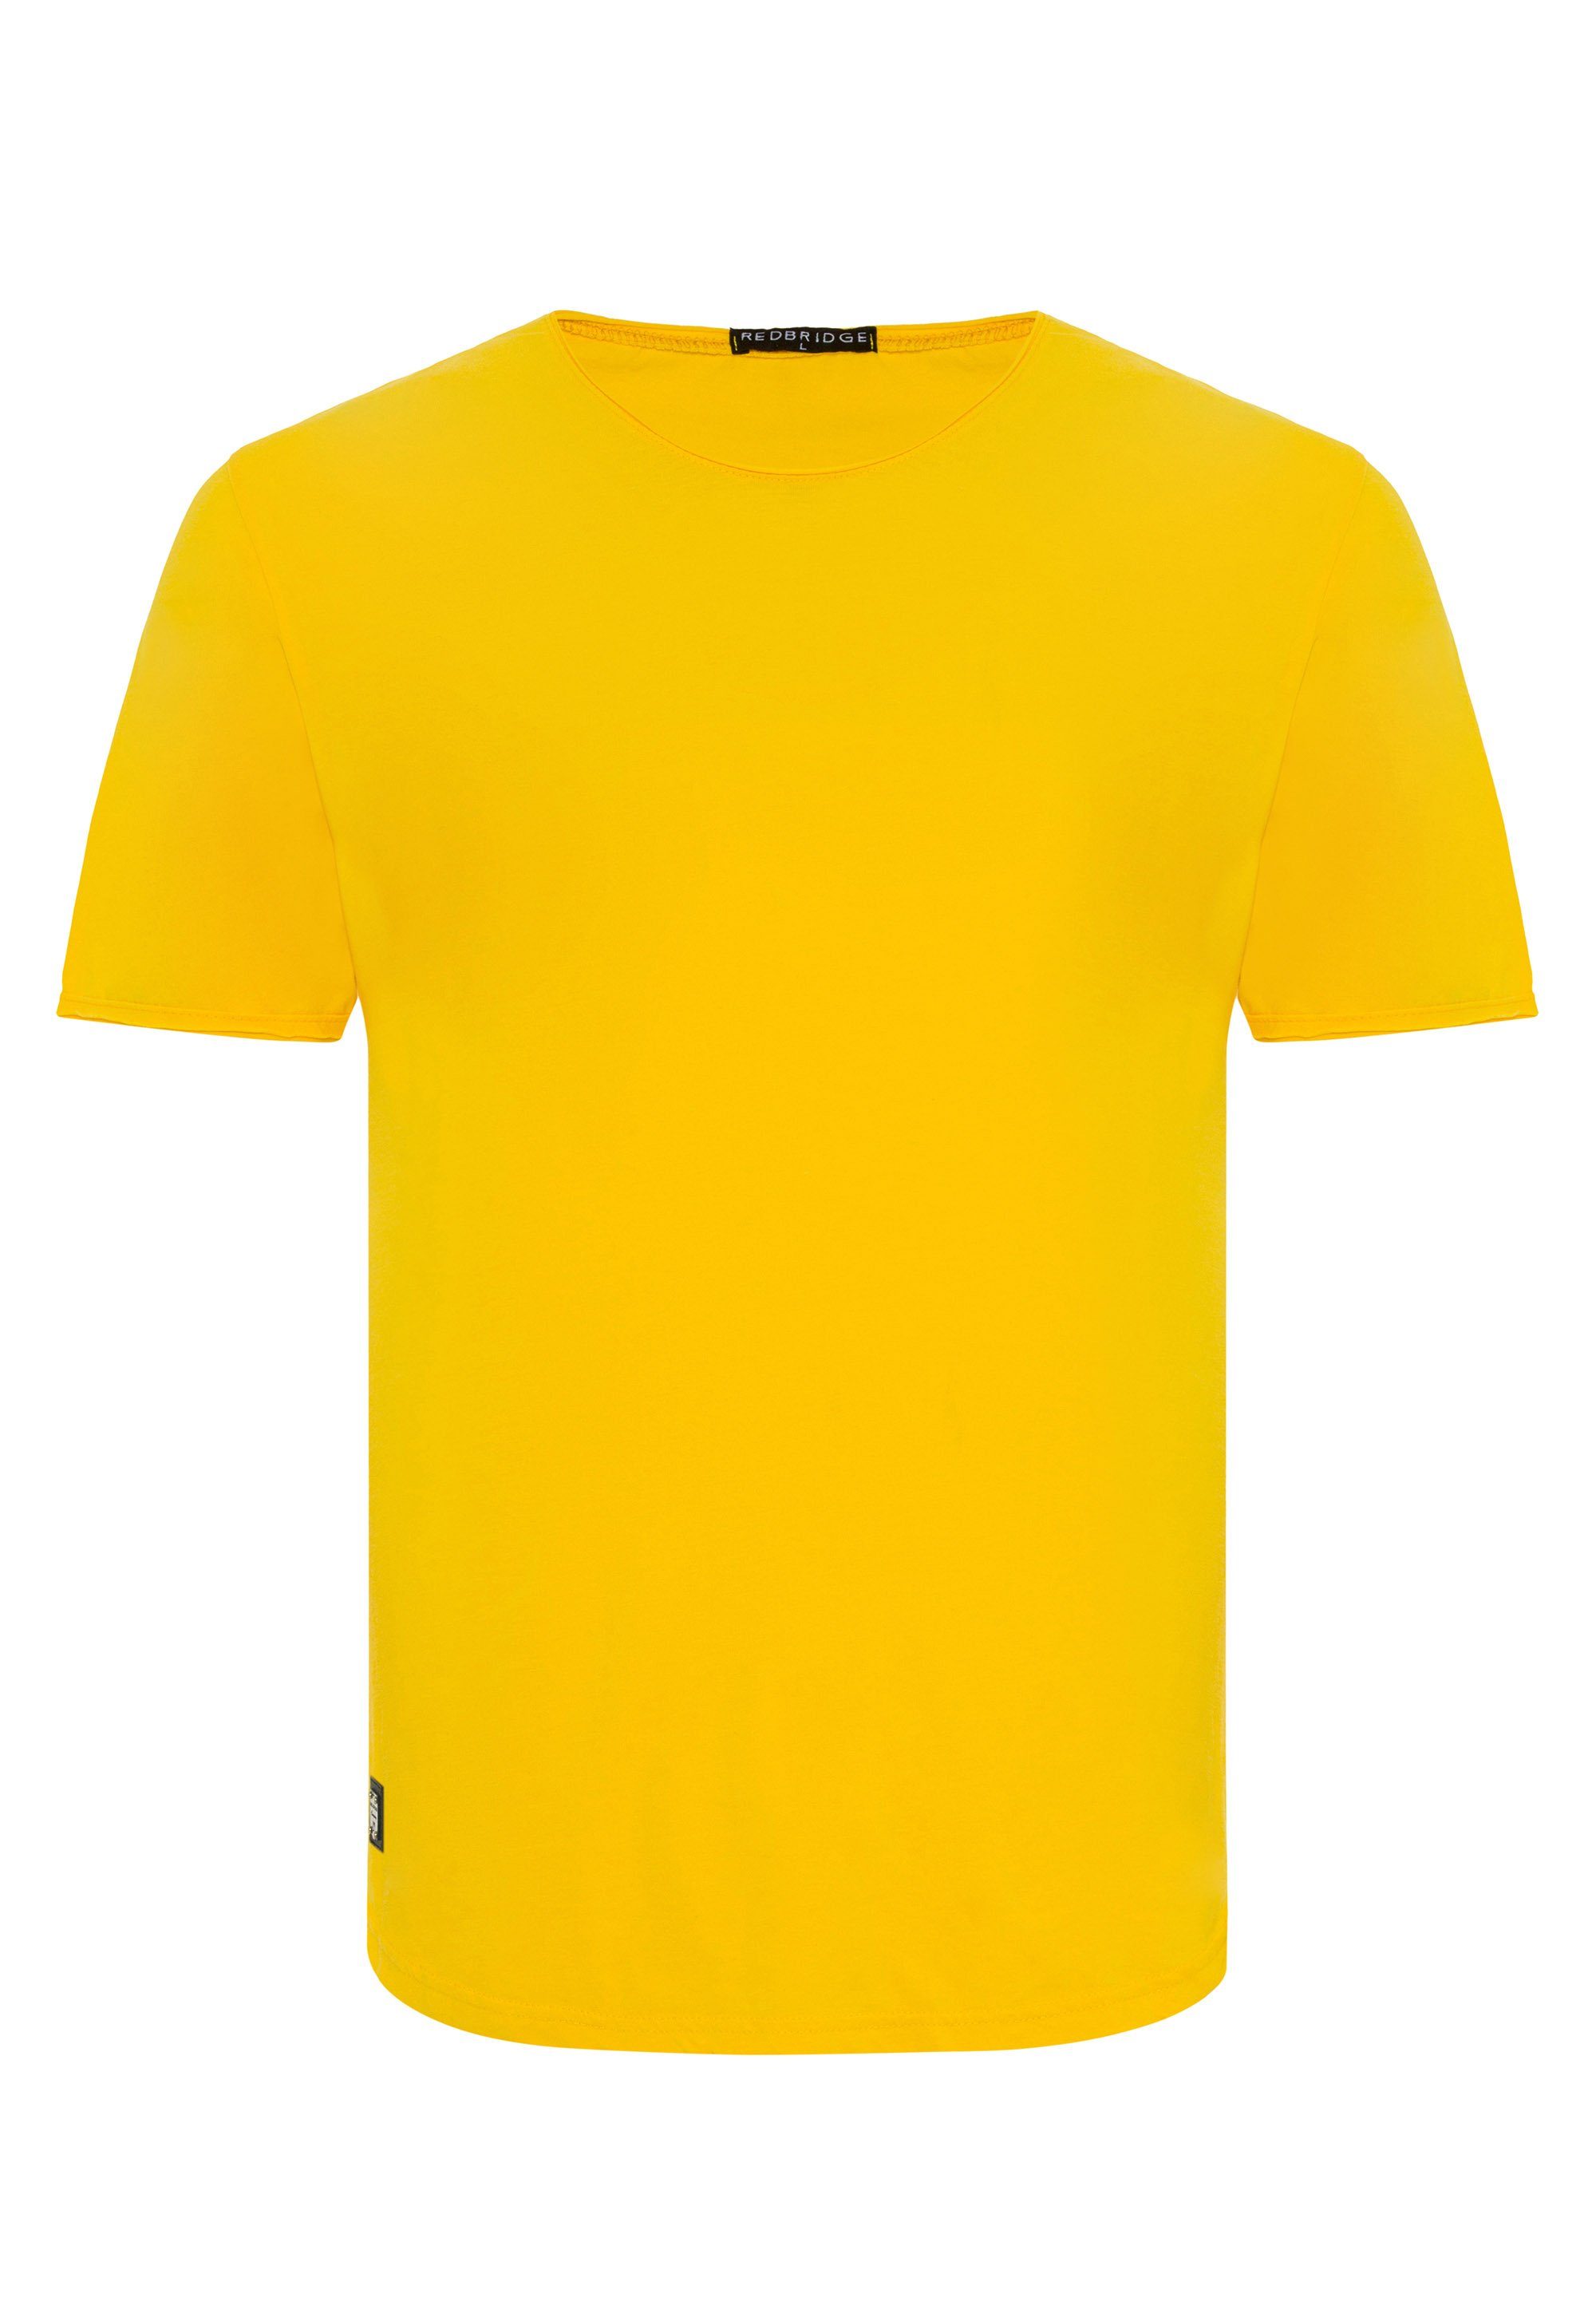 RedBridge abgerundeten T-Shirt Saum gelb Taunton mit